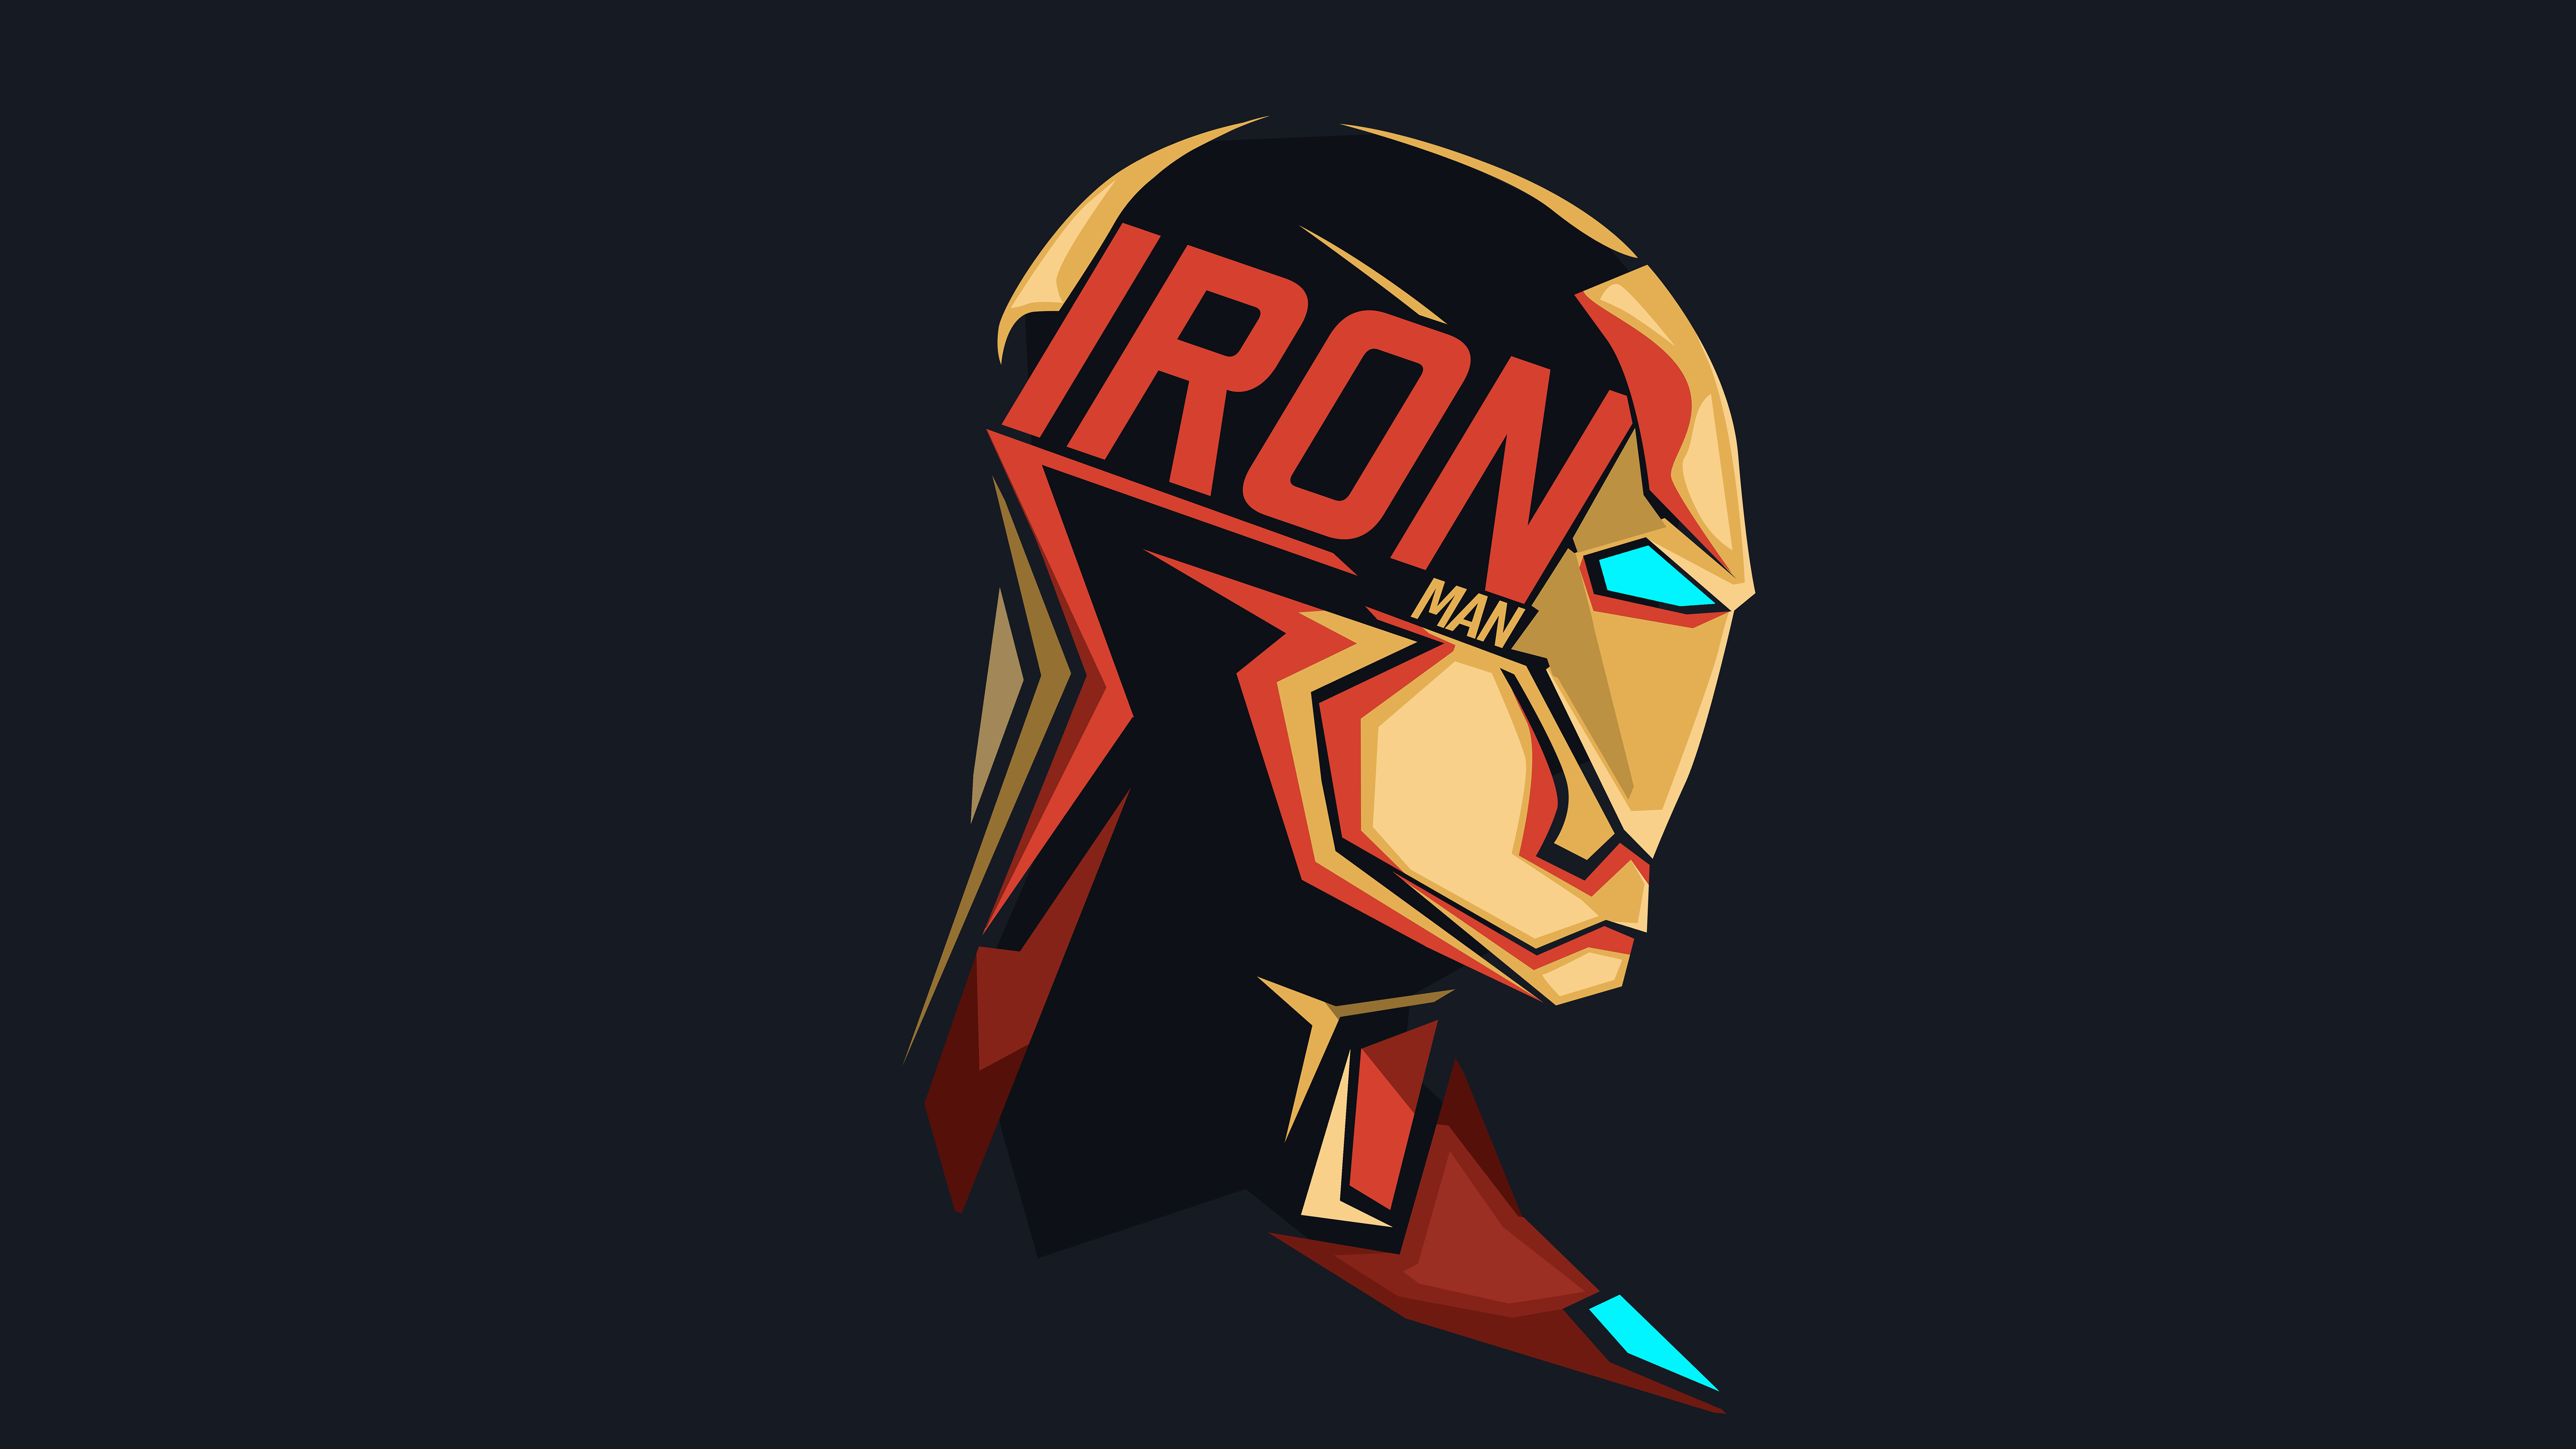 Iron Man Minimal Artwork 4K 8K